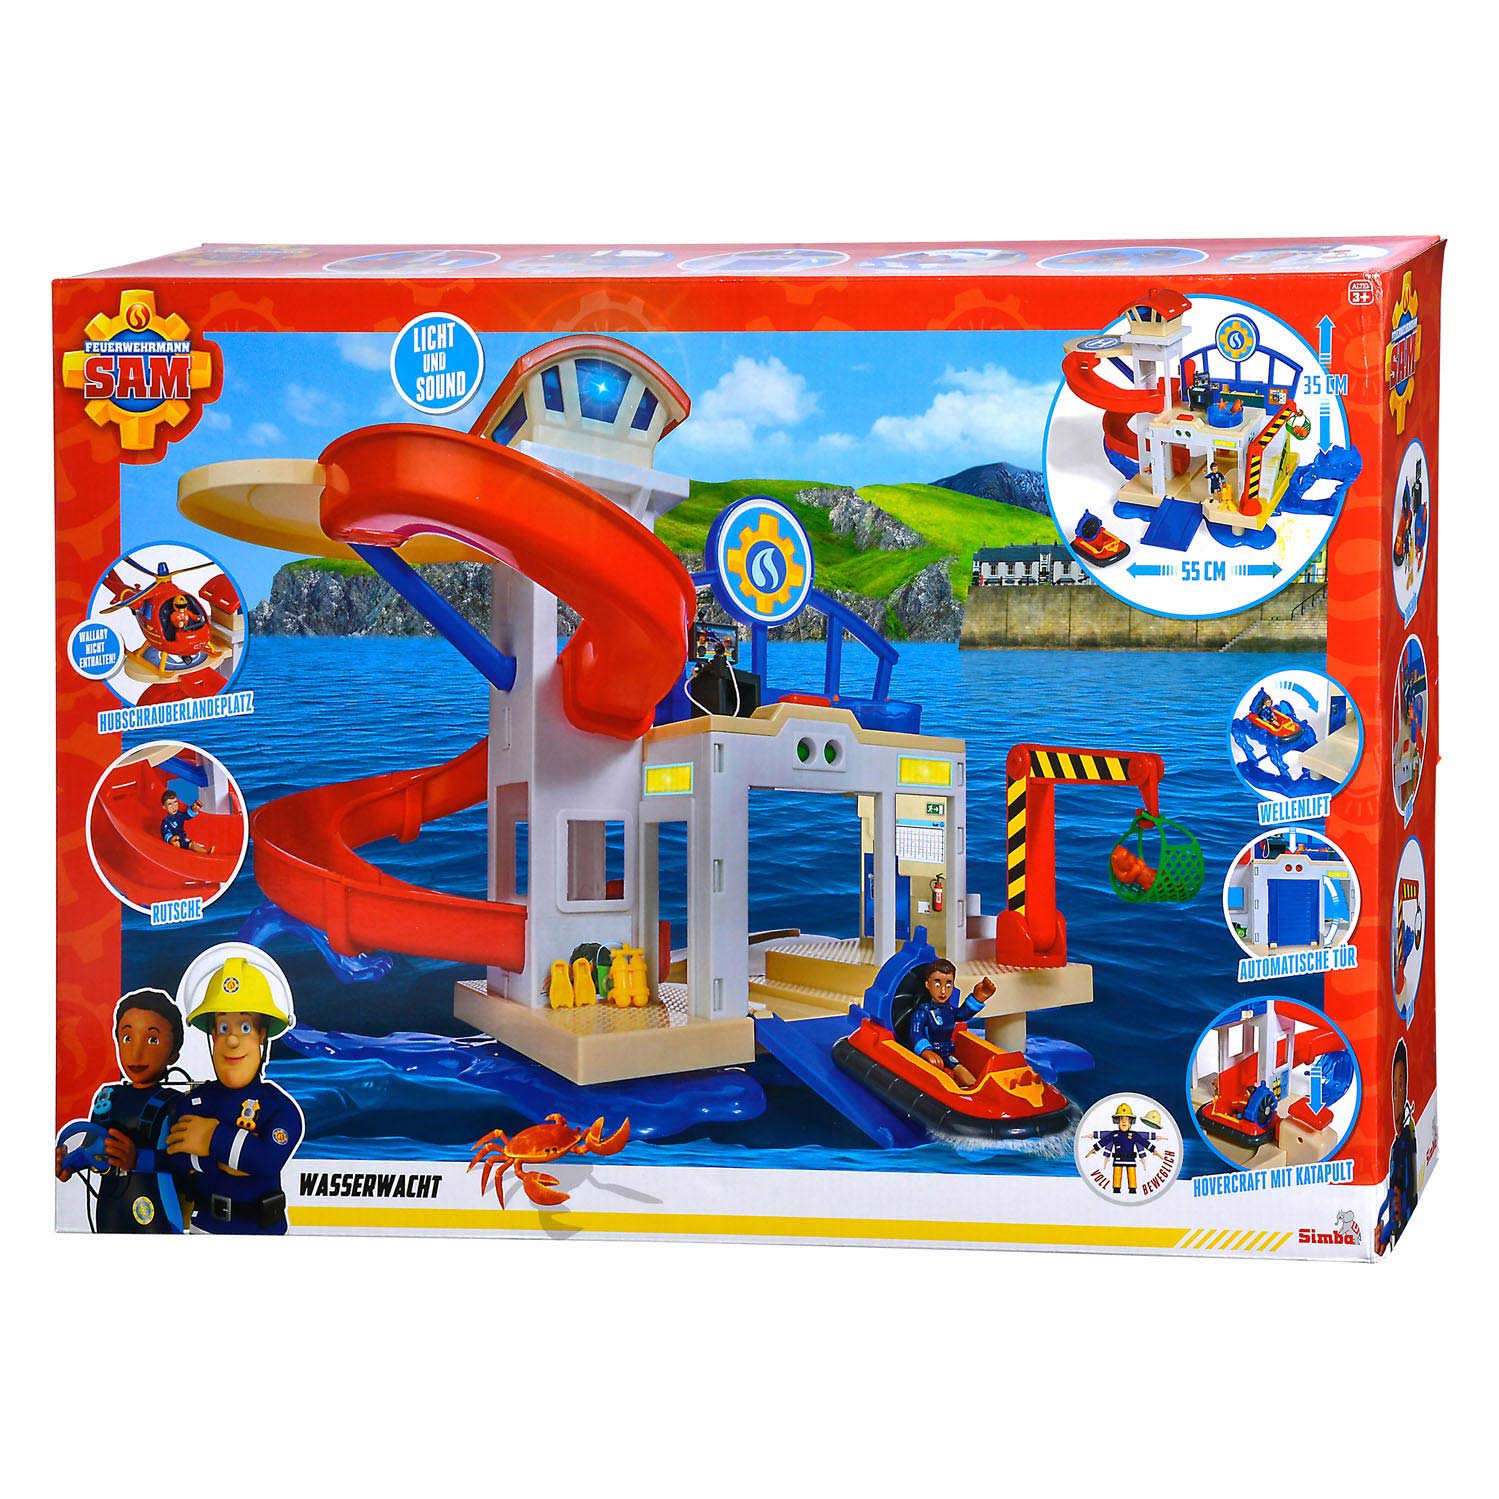 Feuerwehrmann Sam Ocean Rescue Station